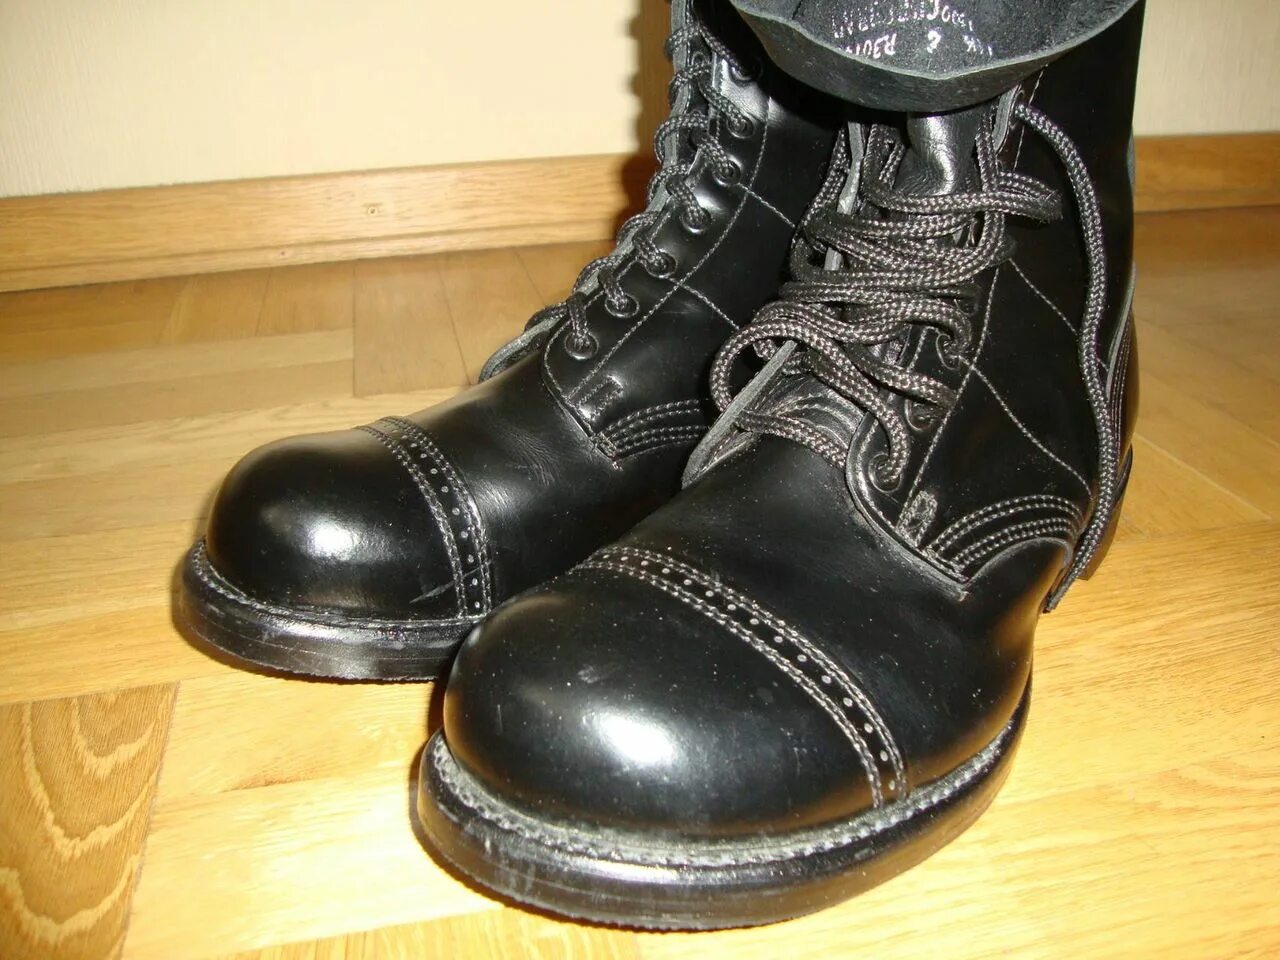 Ботинки 47 размера мужские. Десантные ботинки Коркоран. Ботинки Corcoran Jump Boots. Ботинки Corcoran 1500. Американские берцы Коркоран.